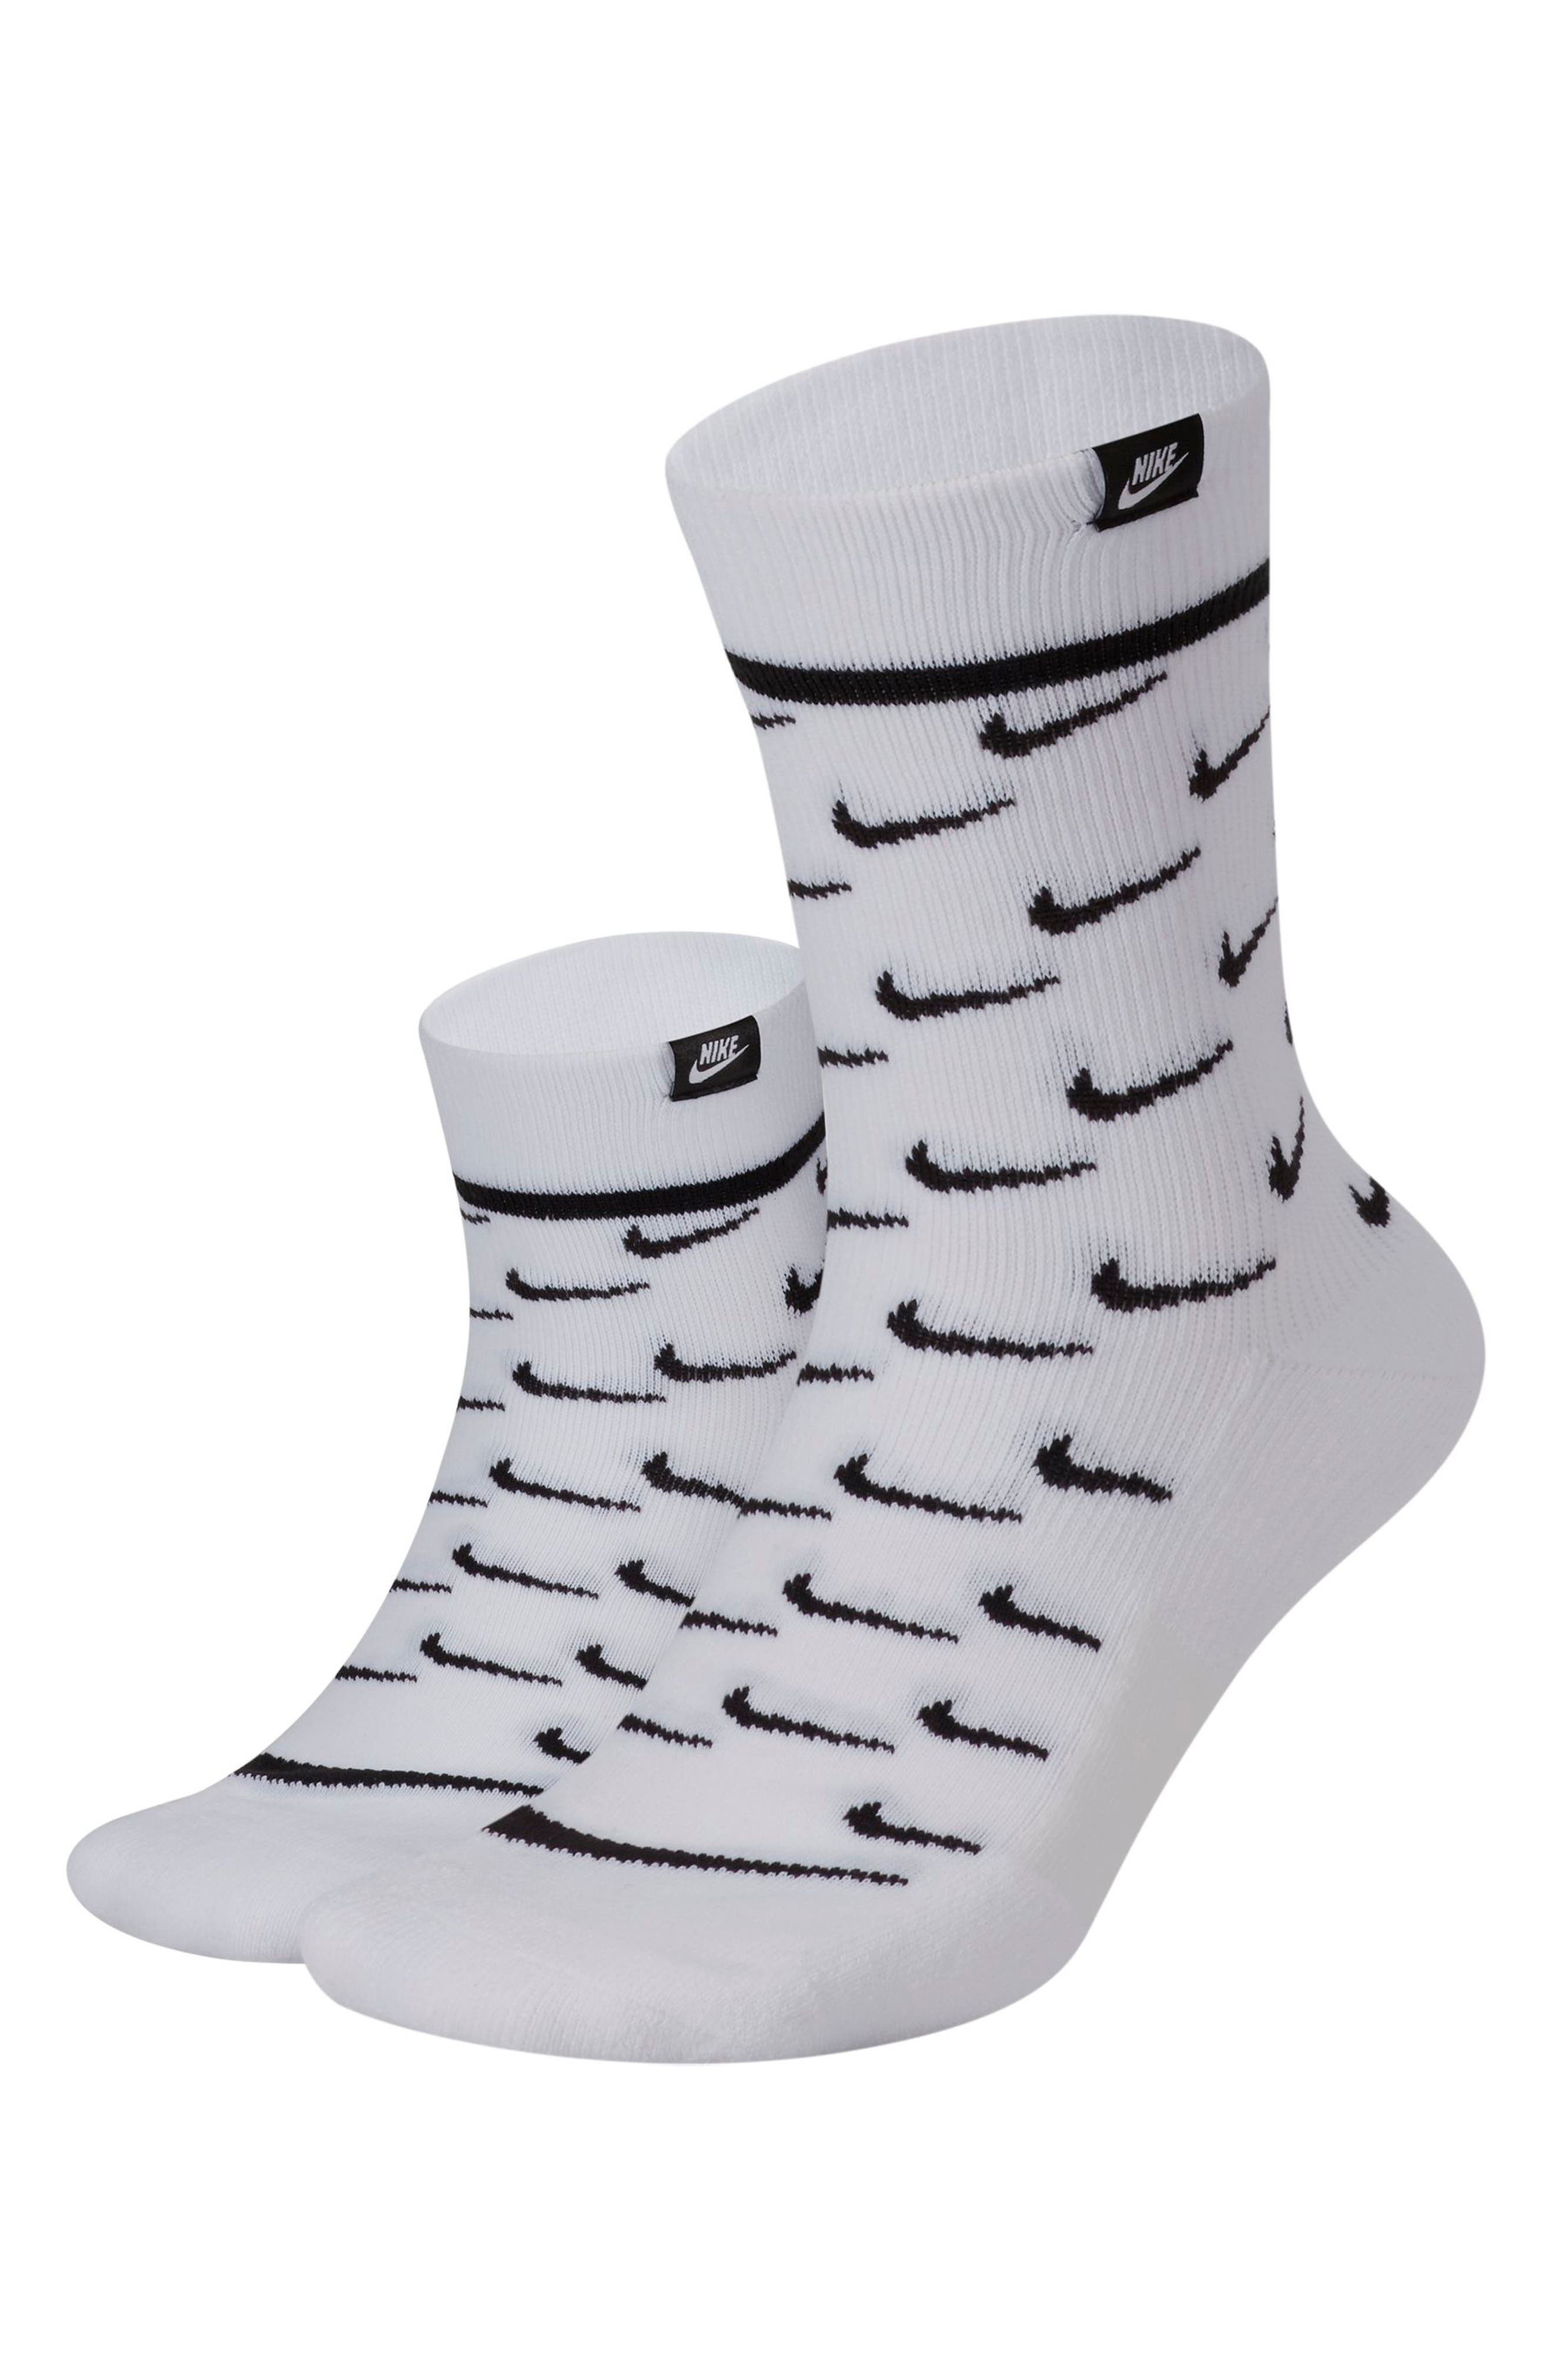 Women's Nike Socks \u0026 Hosiery | Nordstrom